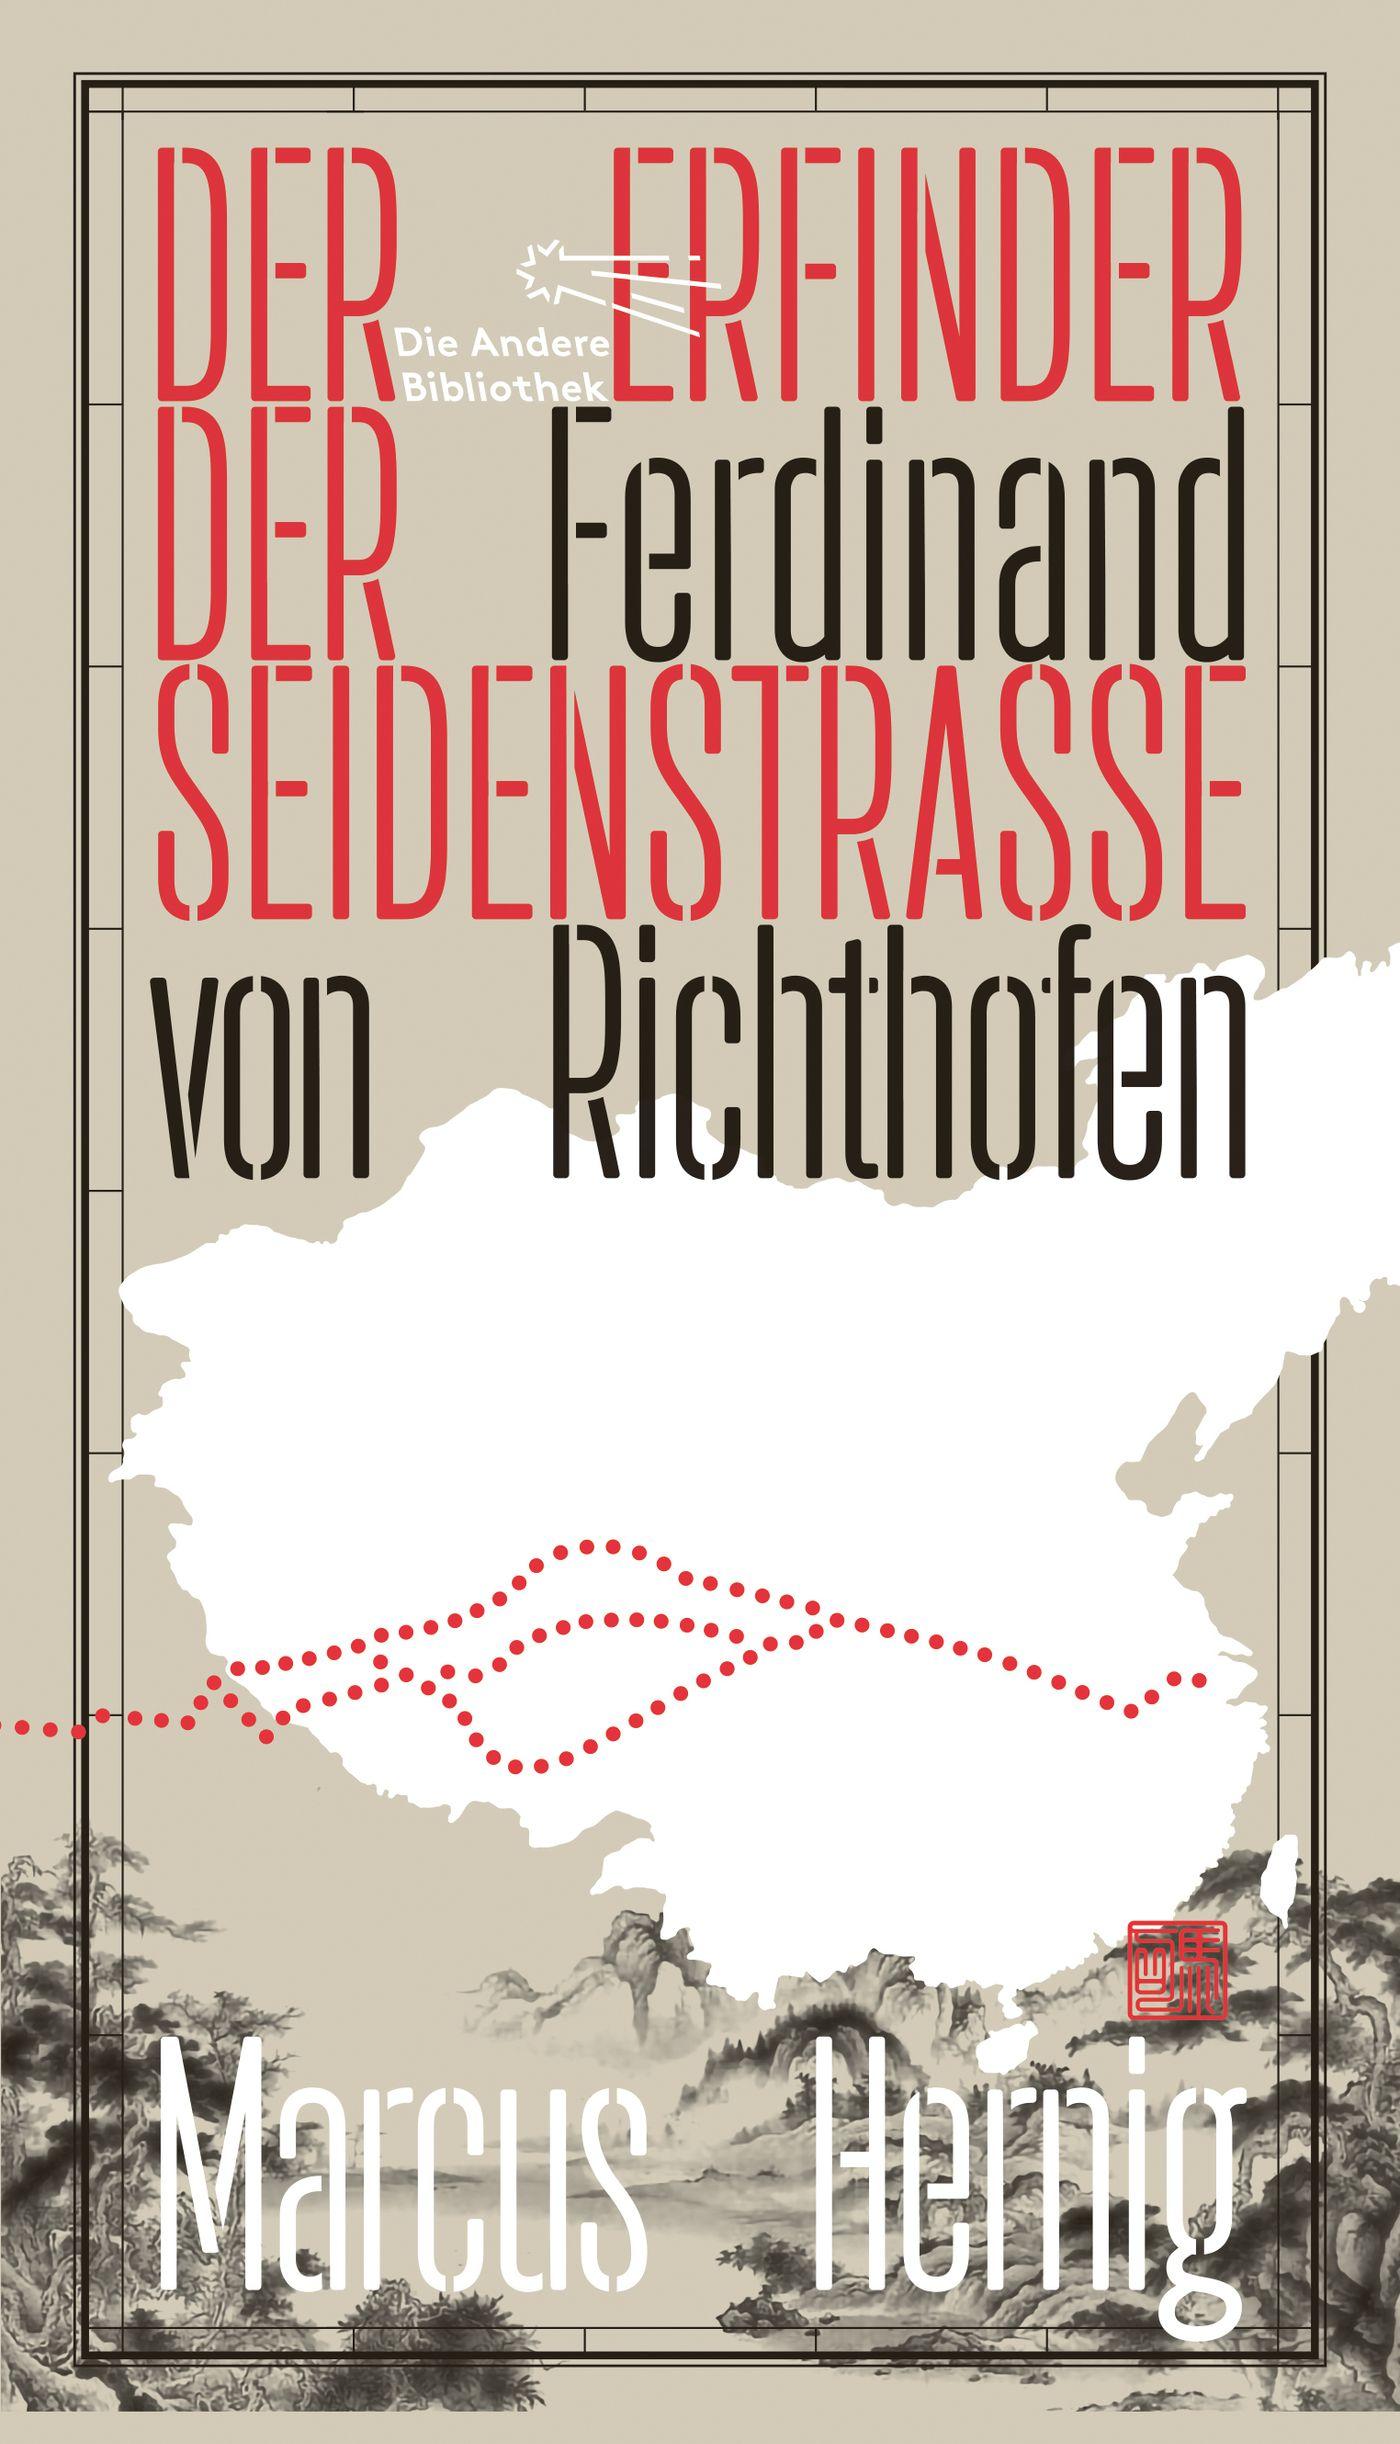 Ferdinand von Richthofen. Der Erfinder der Seidenstraße Die Andere Bibliothek 451